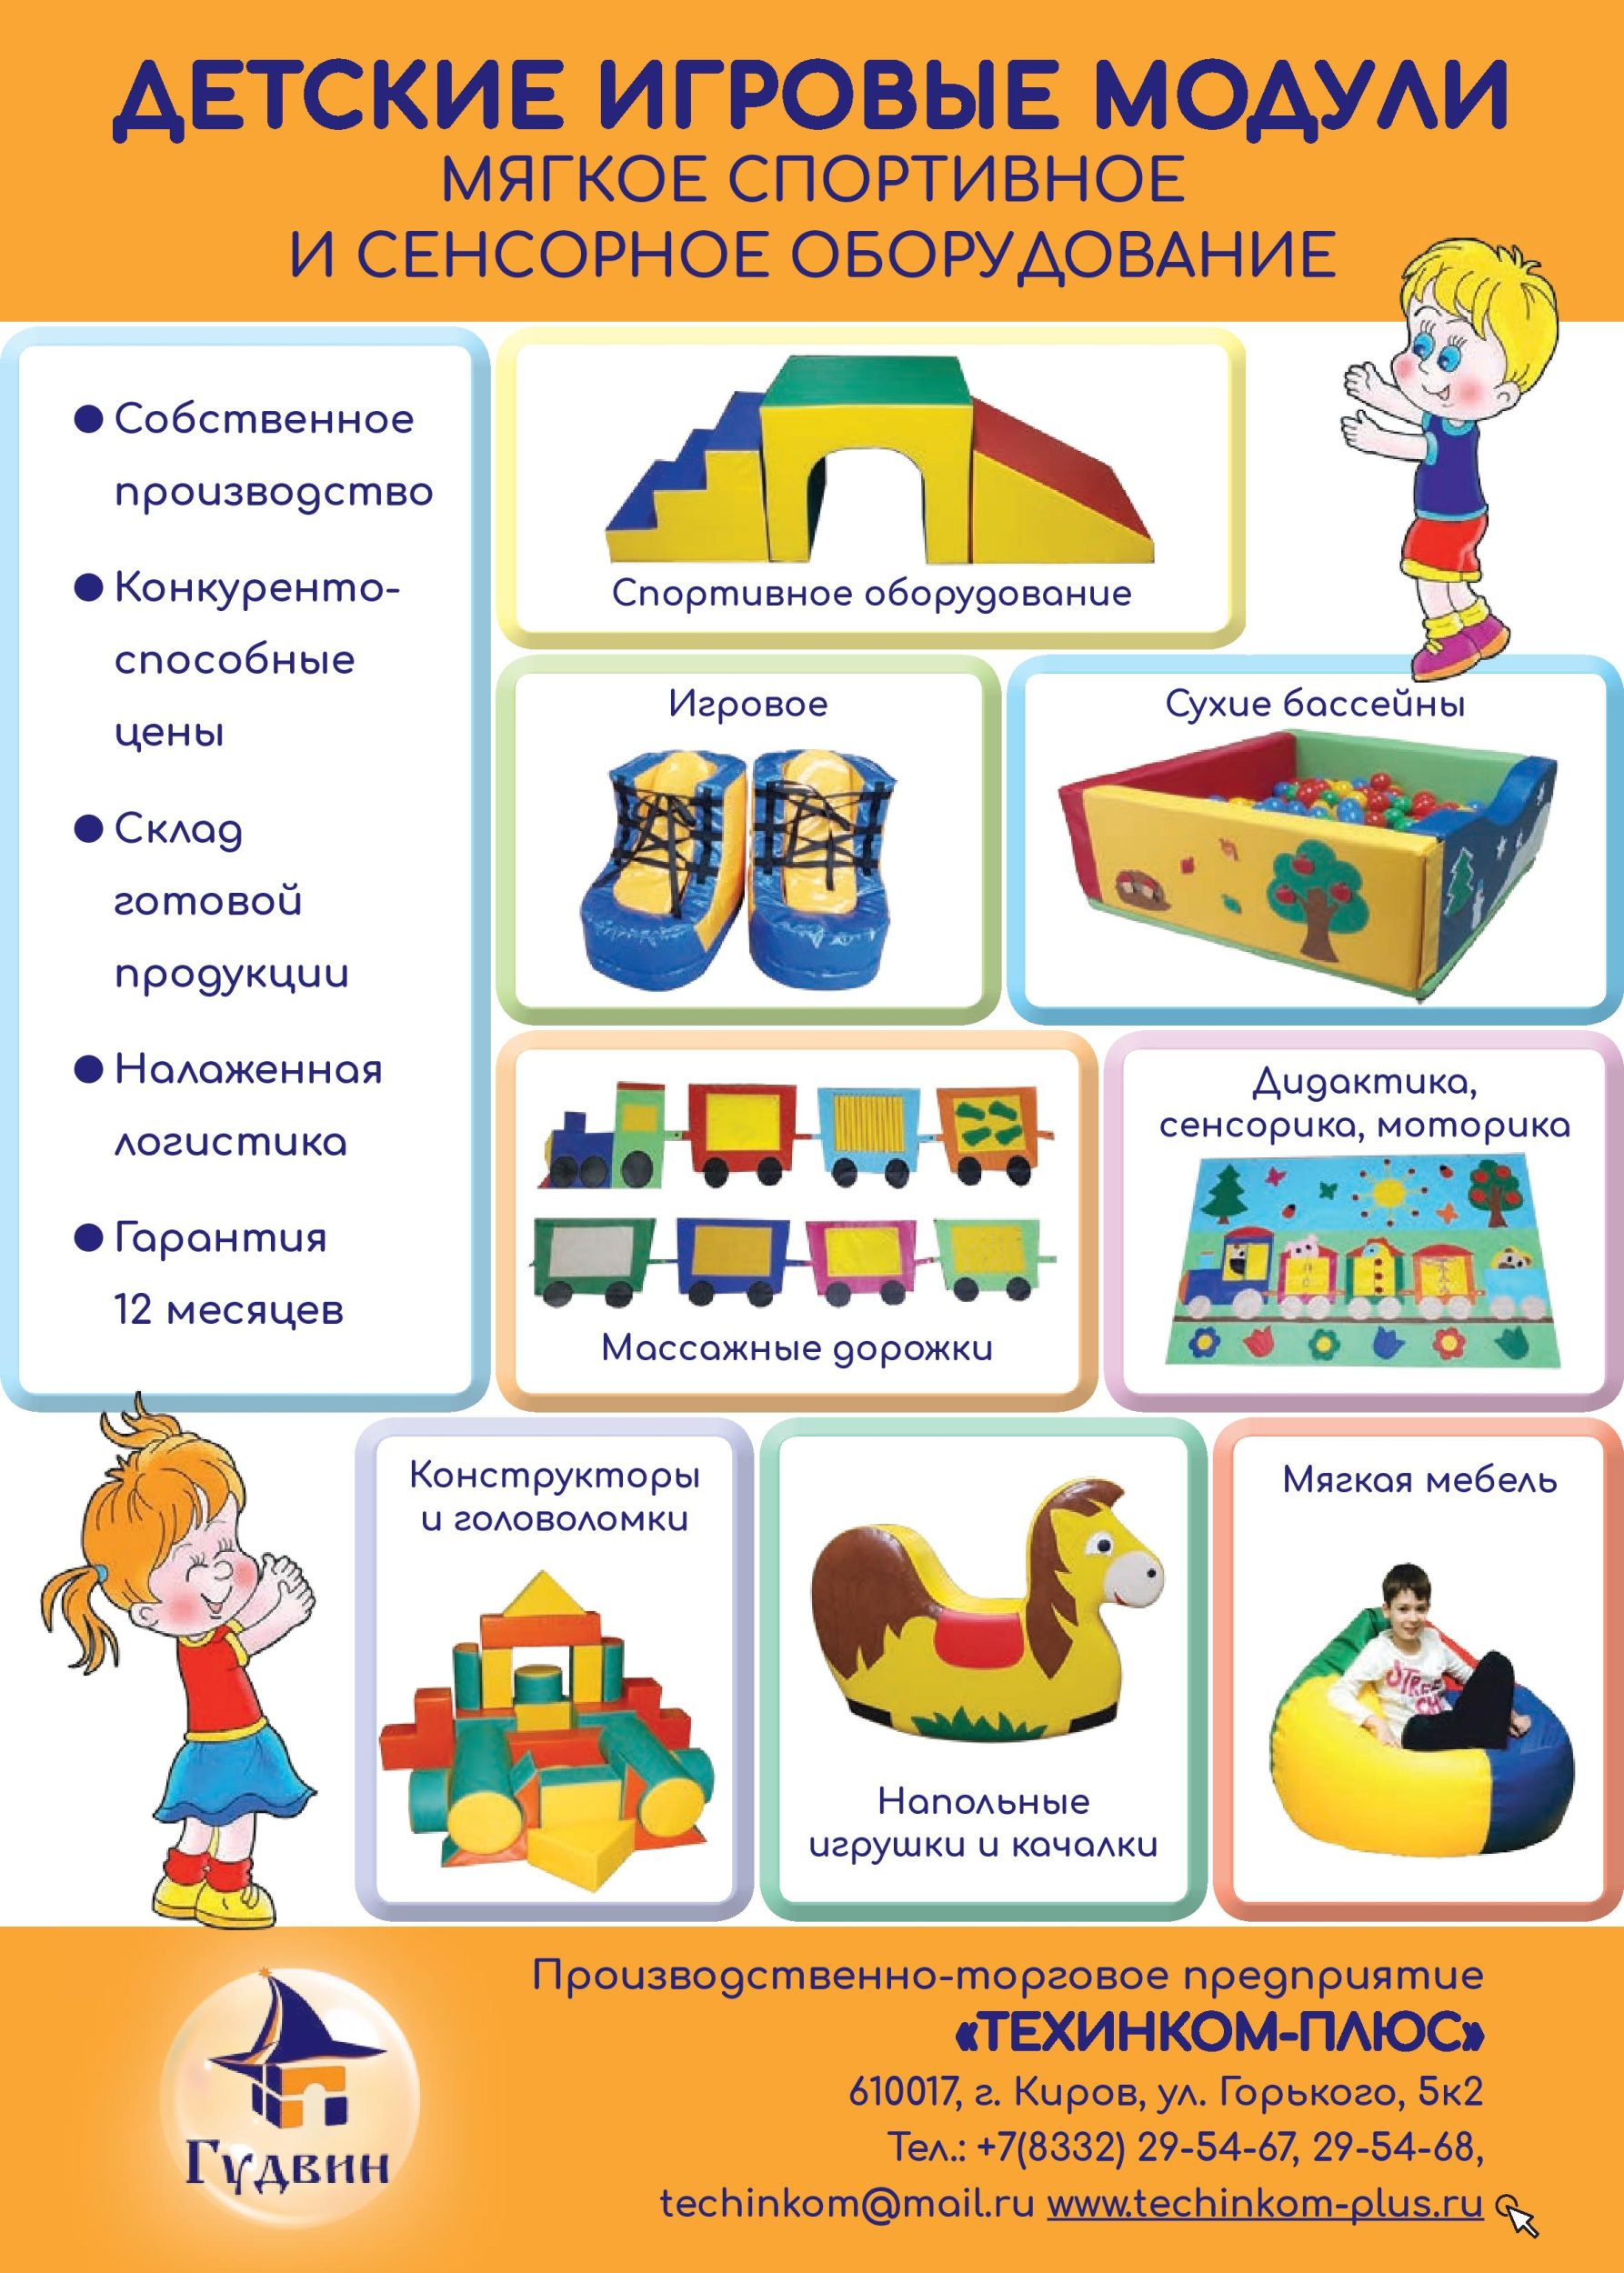 Детская мебель и оборудование ООО ПТП «Техинком-плюс»